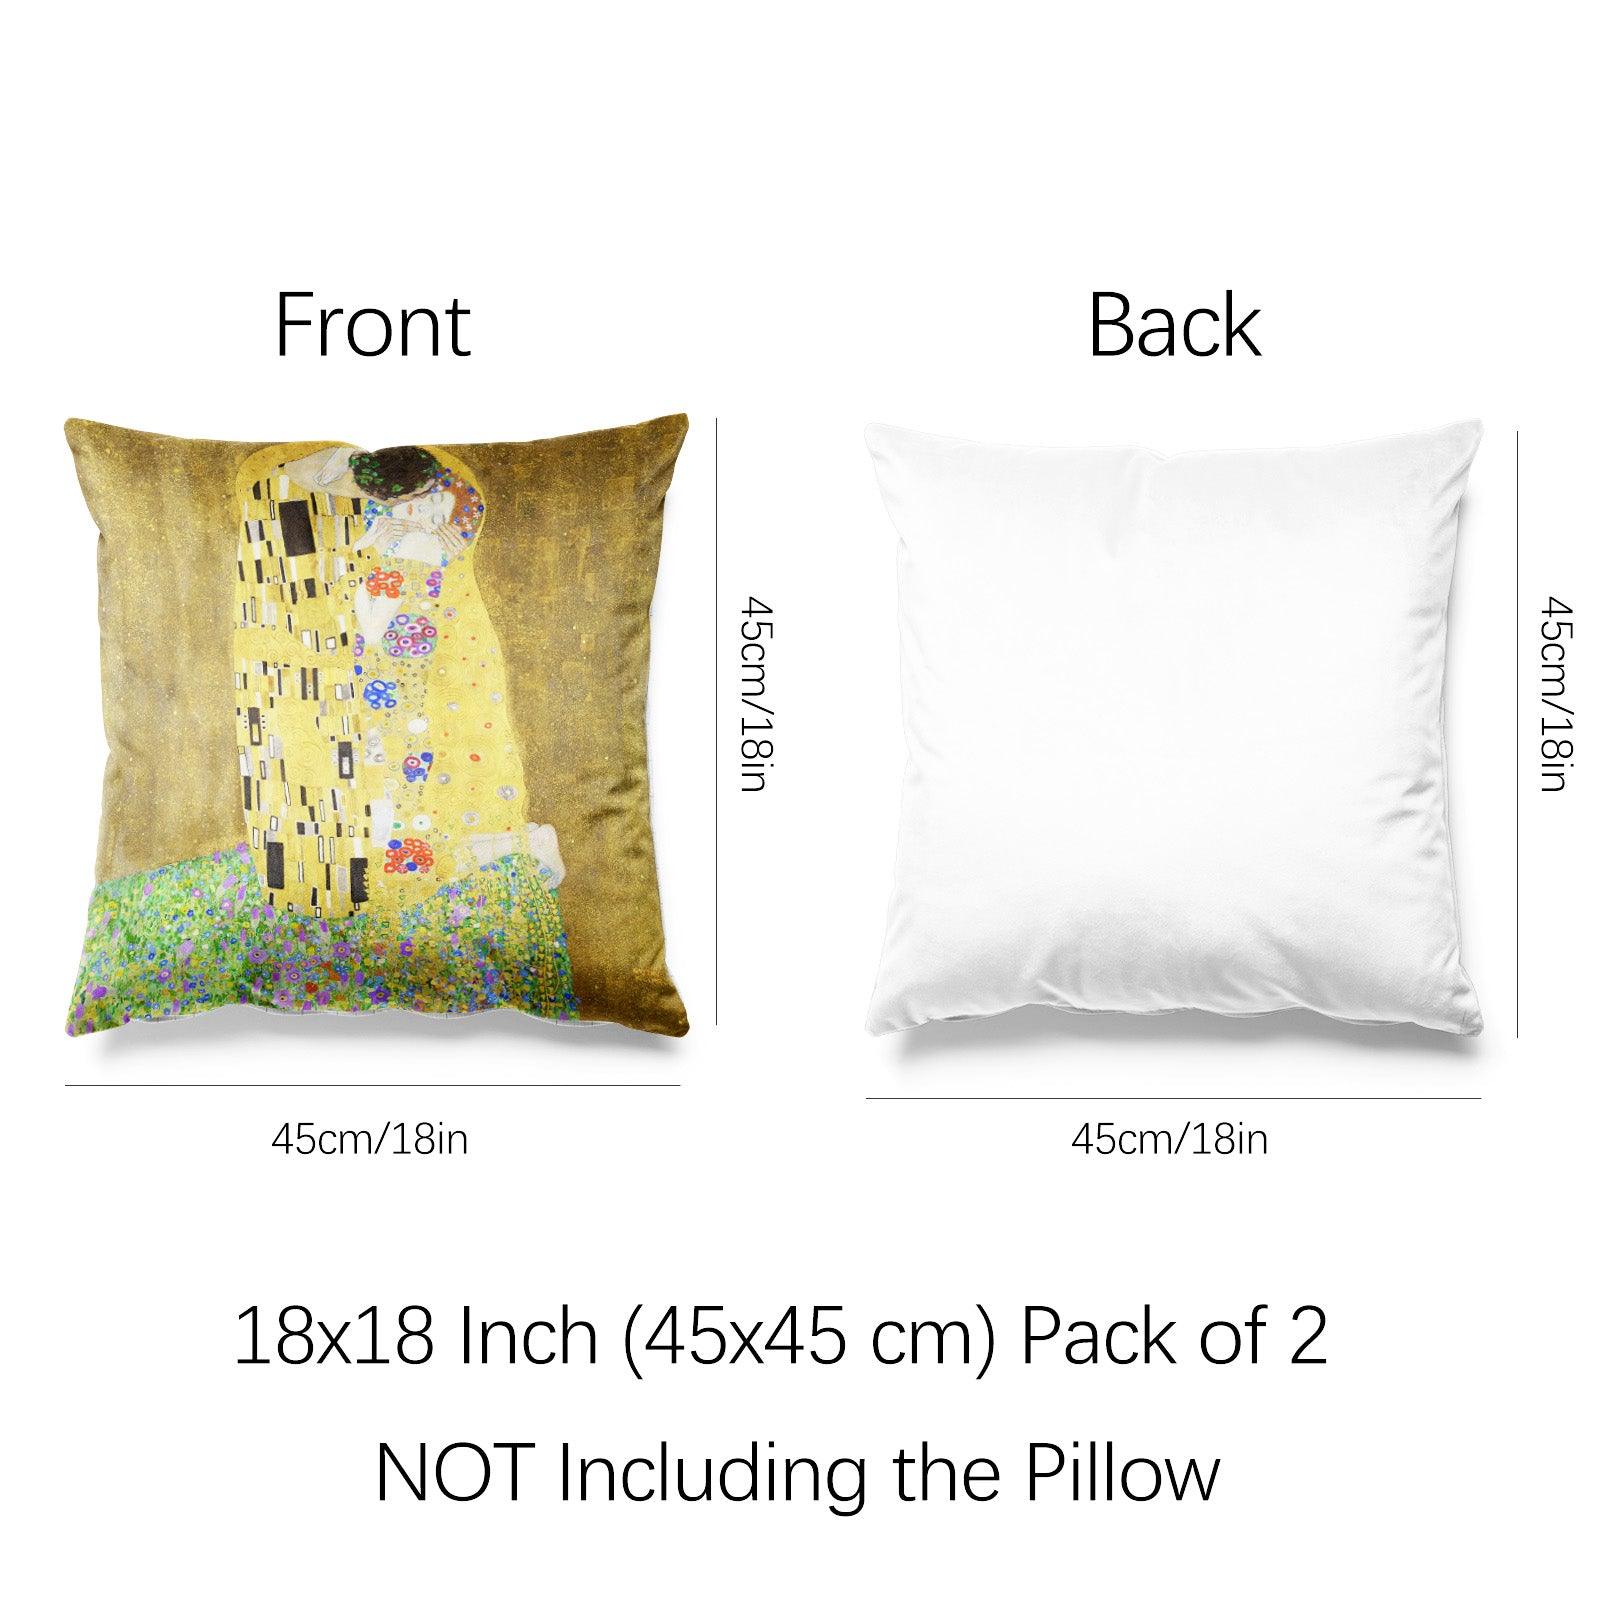 https://www.berkinarts.com/cdn/shop/files/art-abstract-throw-pillow-covers-pack-of-2-18x18-inch-the-kiss-by-gustav-klimt-berkin-arts-2.jpg?v=1688965438